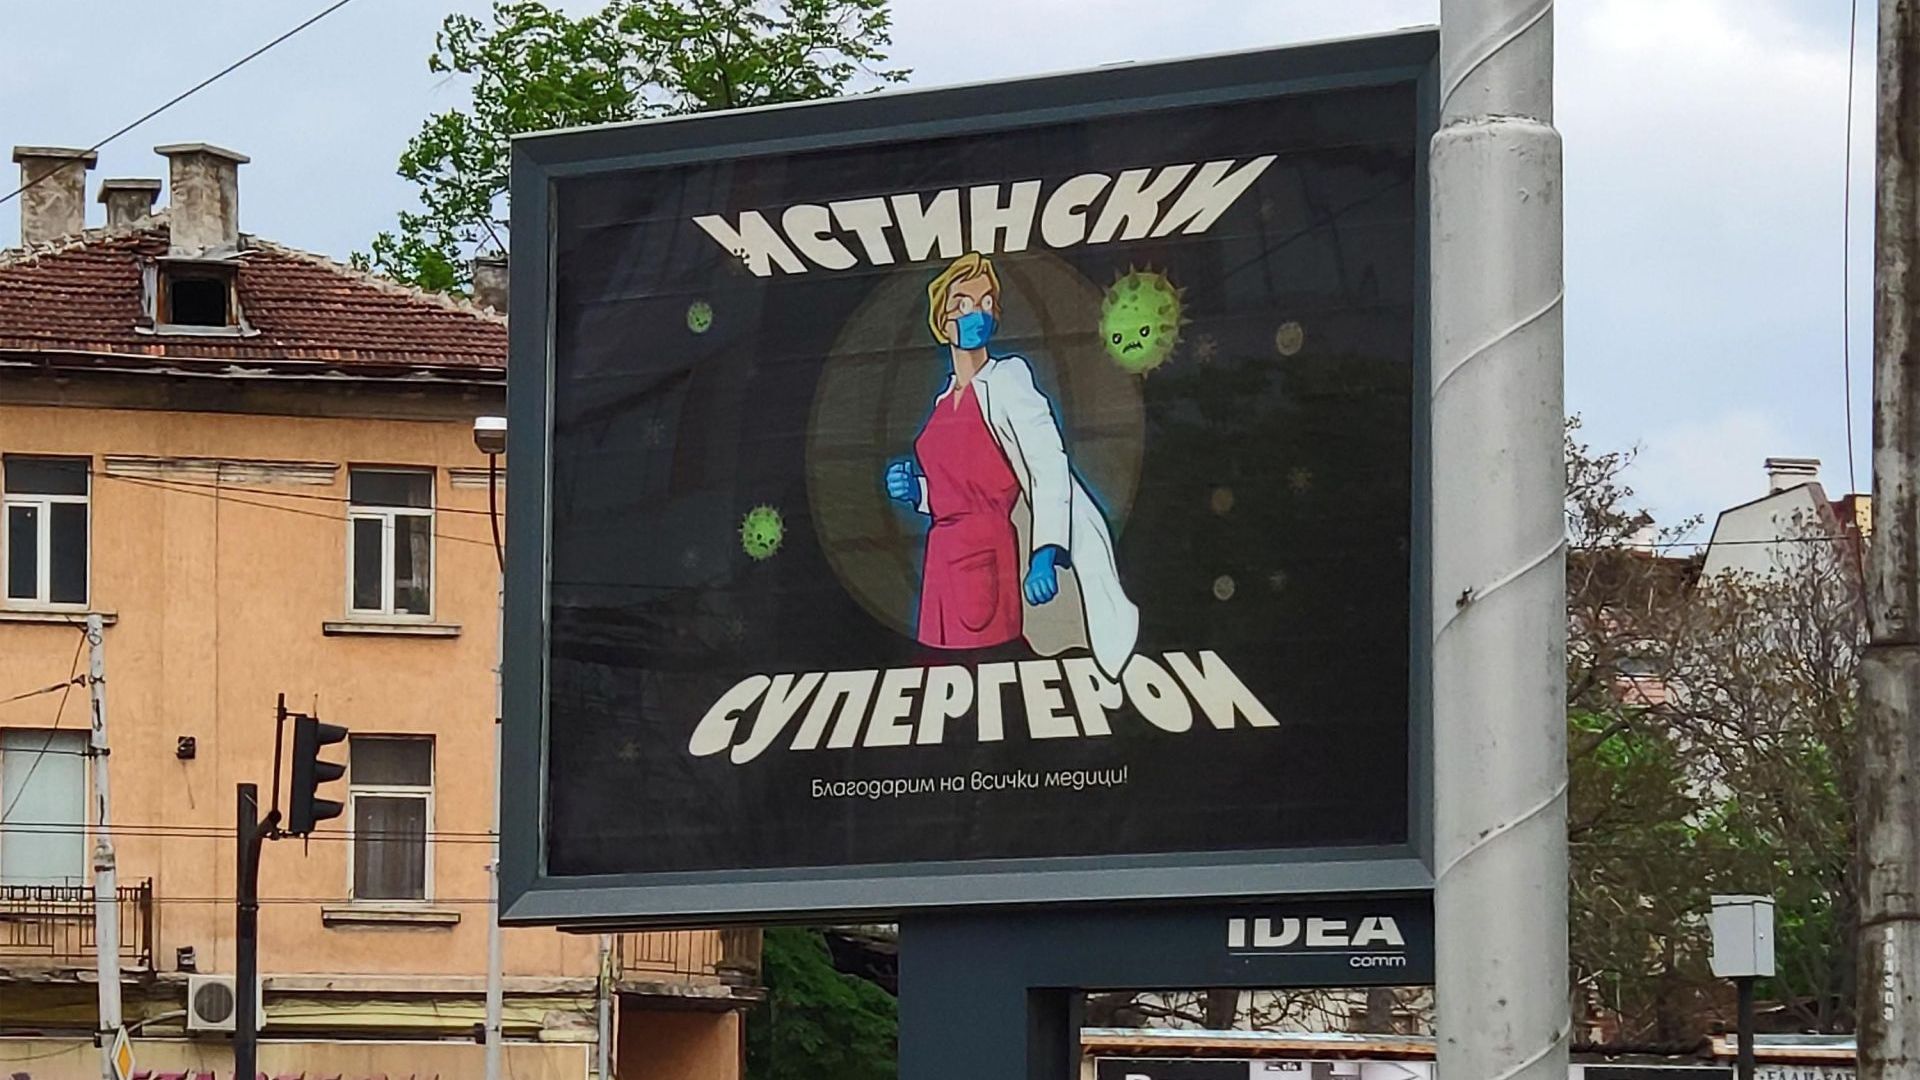 Благодарствен билборд към мeдиците се появи в столицата (снимки)